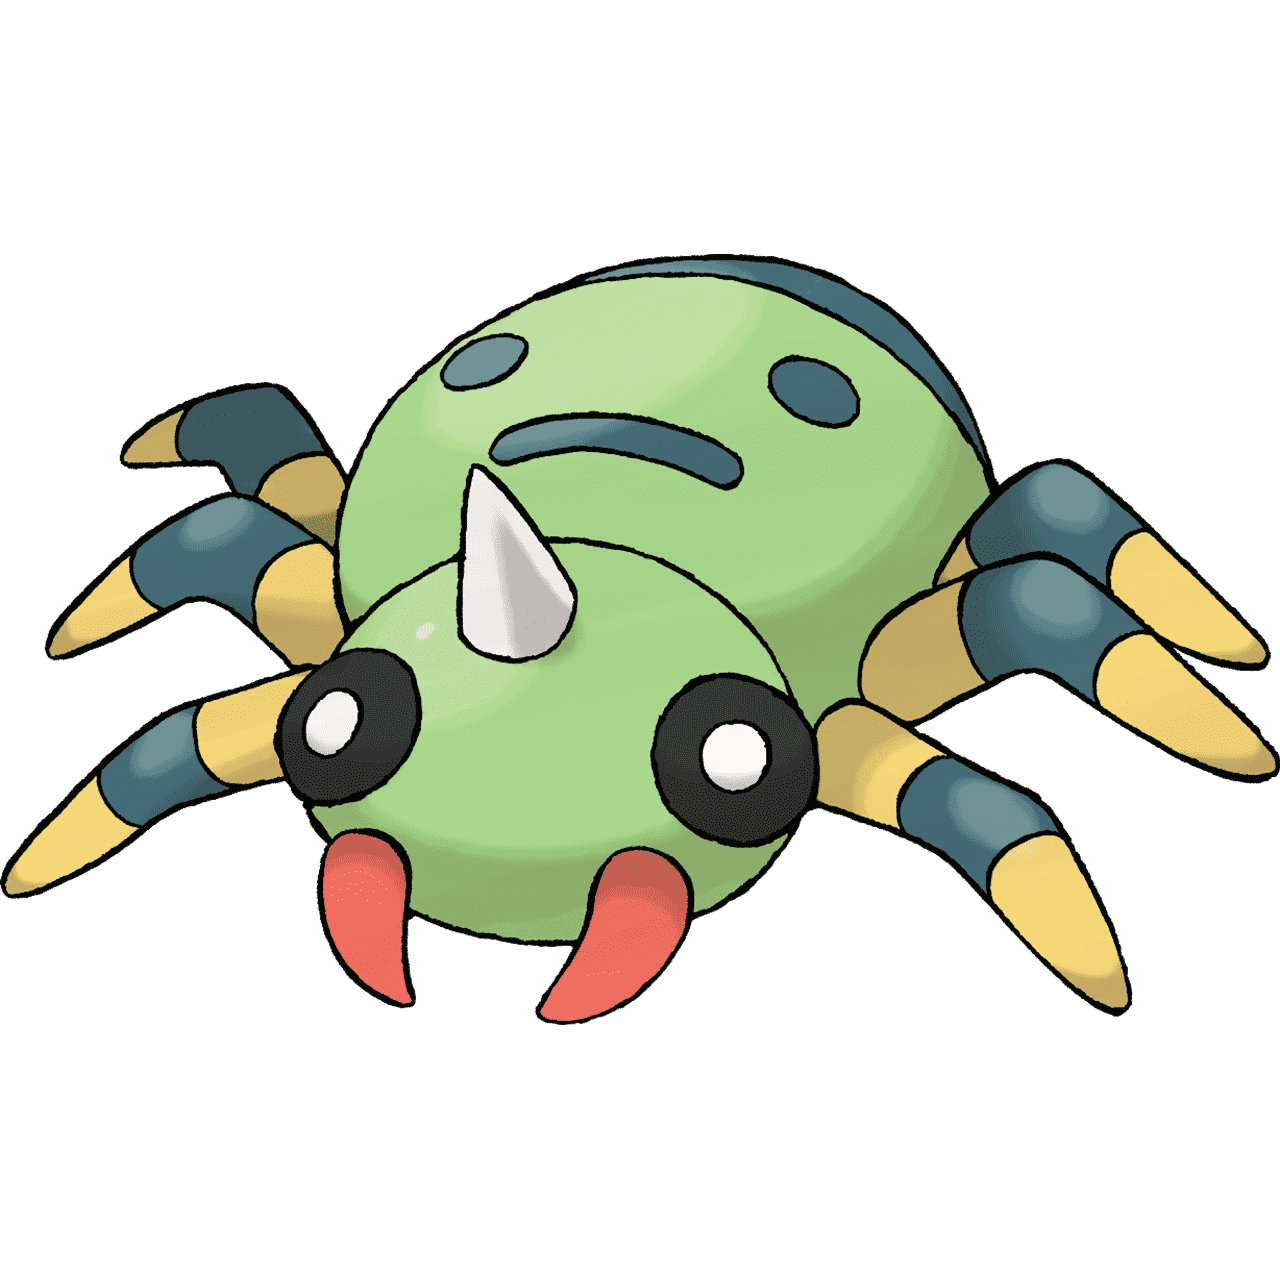 Pokémon Artwork Mimigal